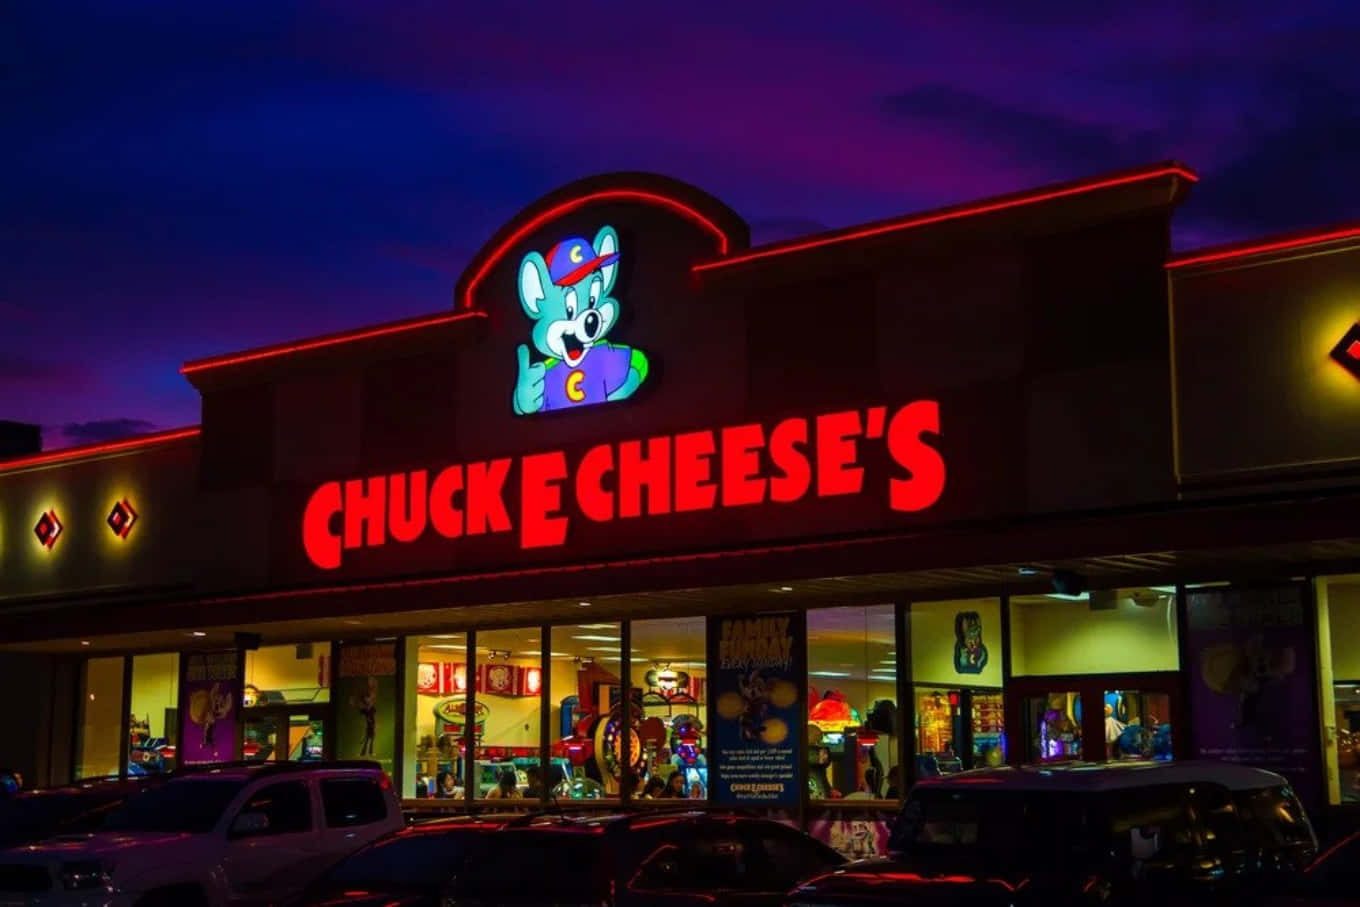 Enjoy Fun Times with Chuck E. Cheese!